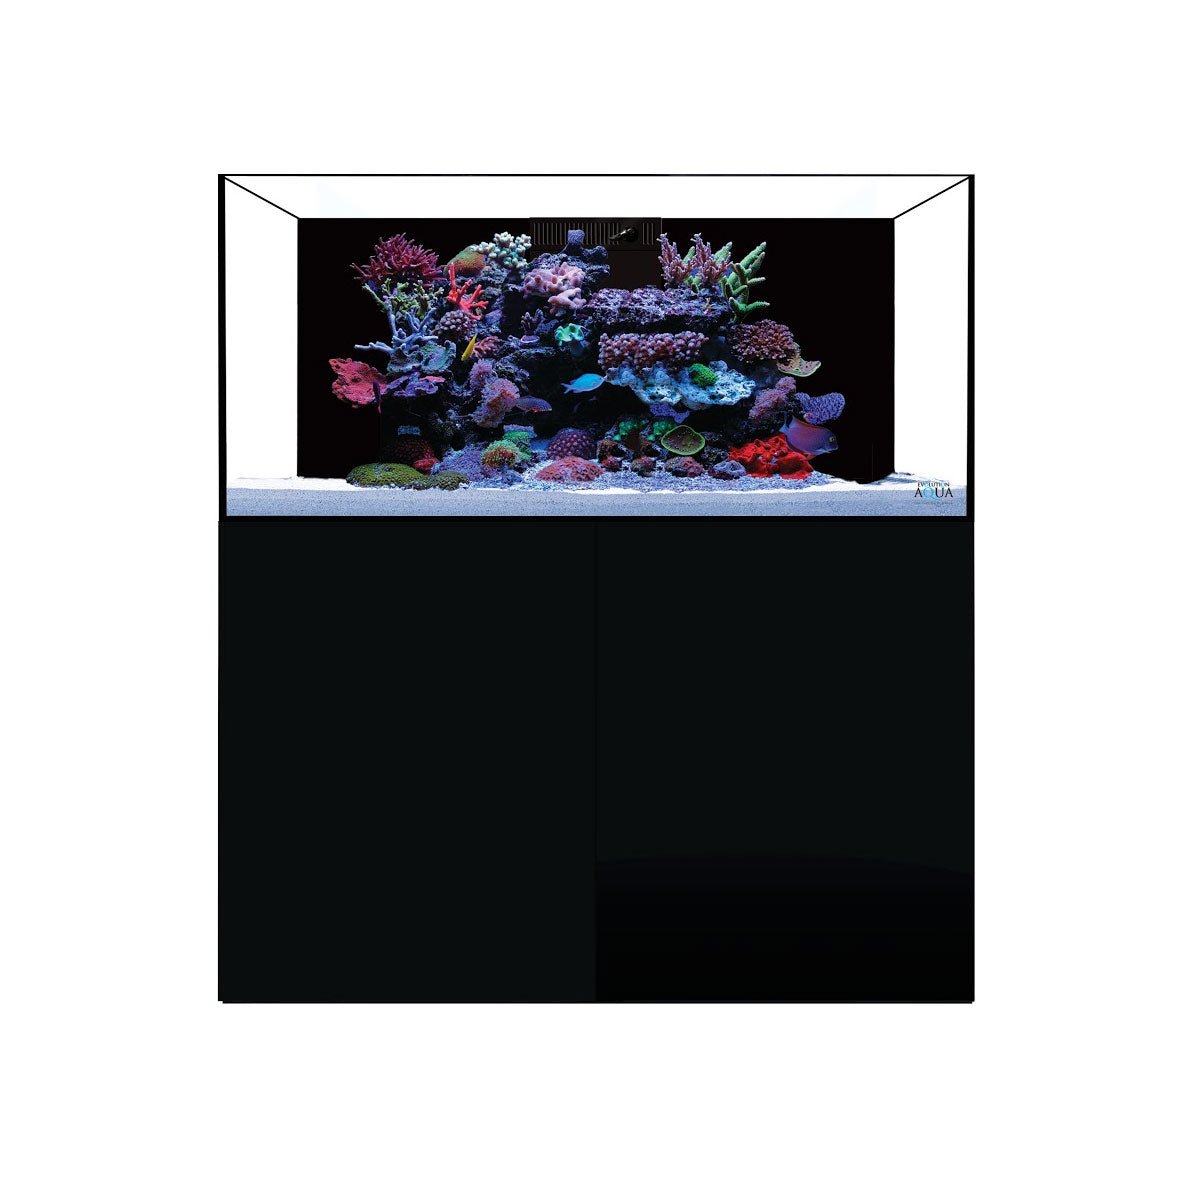 D-D Aqua-Pro Reef 1200 - Driftwood Concrete - AquaFrame Cabinet - Charterhouse Aquatics